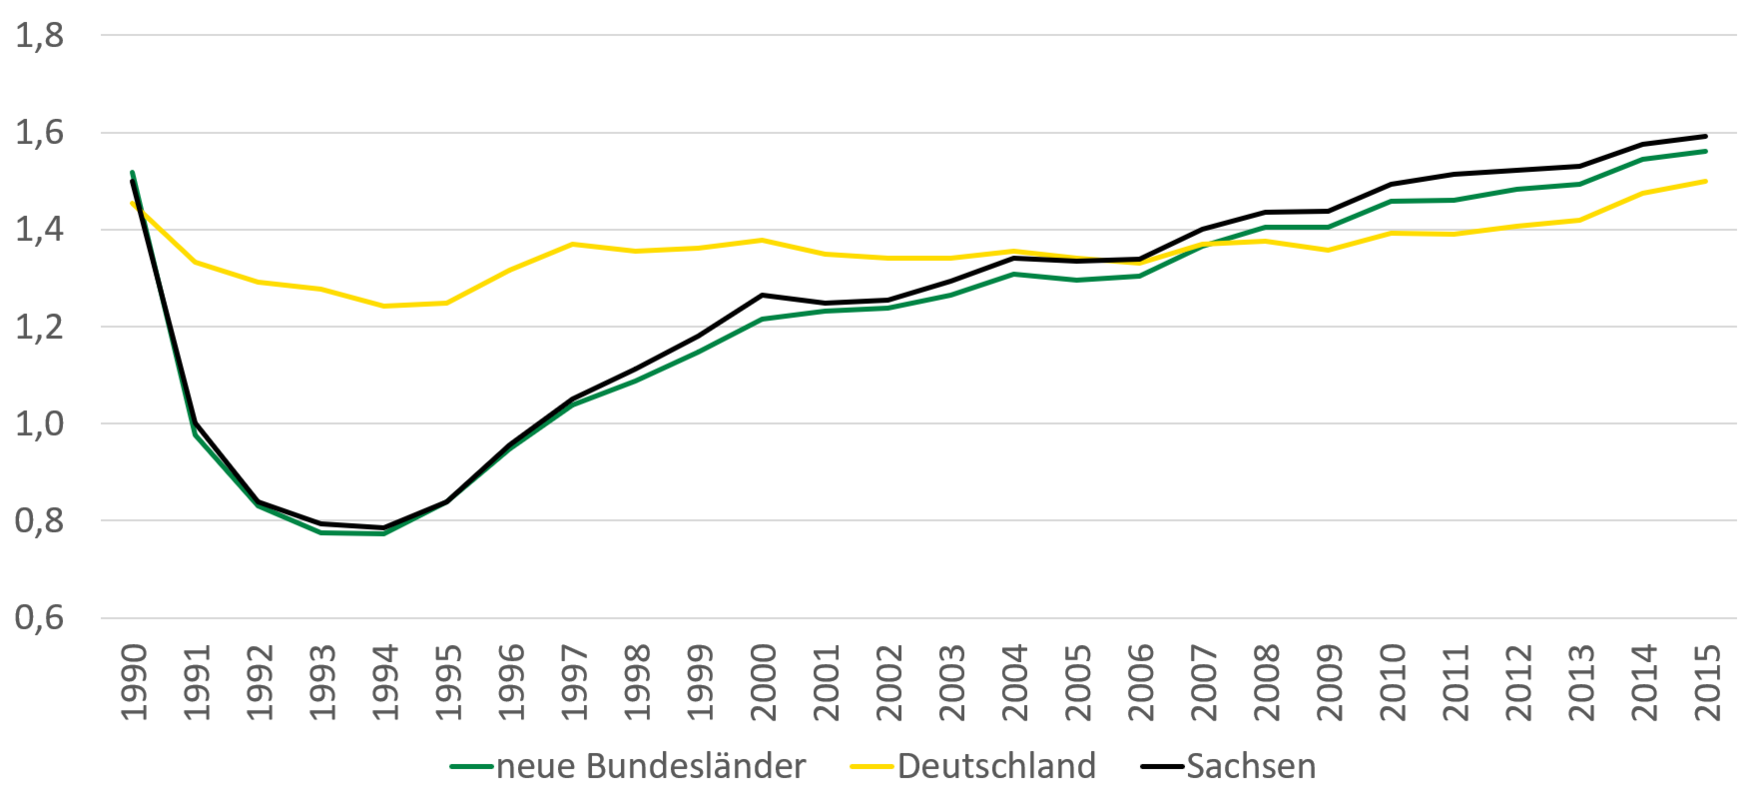 Während im deutschlandweiten Durchschnitt die Fertilitätsrate in den 90er Jahren bis zu einem Wert von 1,2 gesunken ist, ging die Fertilitätsrate in Sachsen ähnlich wie auch in den anderen neuen Bundesländern bis zu einem Wert von 0,8. zurück. Seit 2004 nähern sich die Fertilitätsraten wieder an und liegen im Jahr 2015 zwischen 1,5 und 1,6.